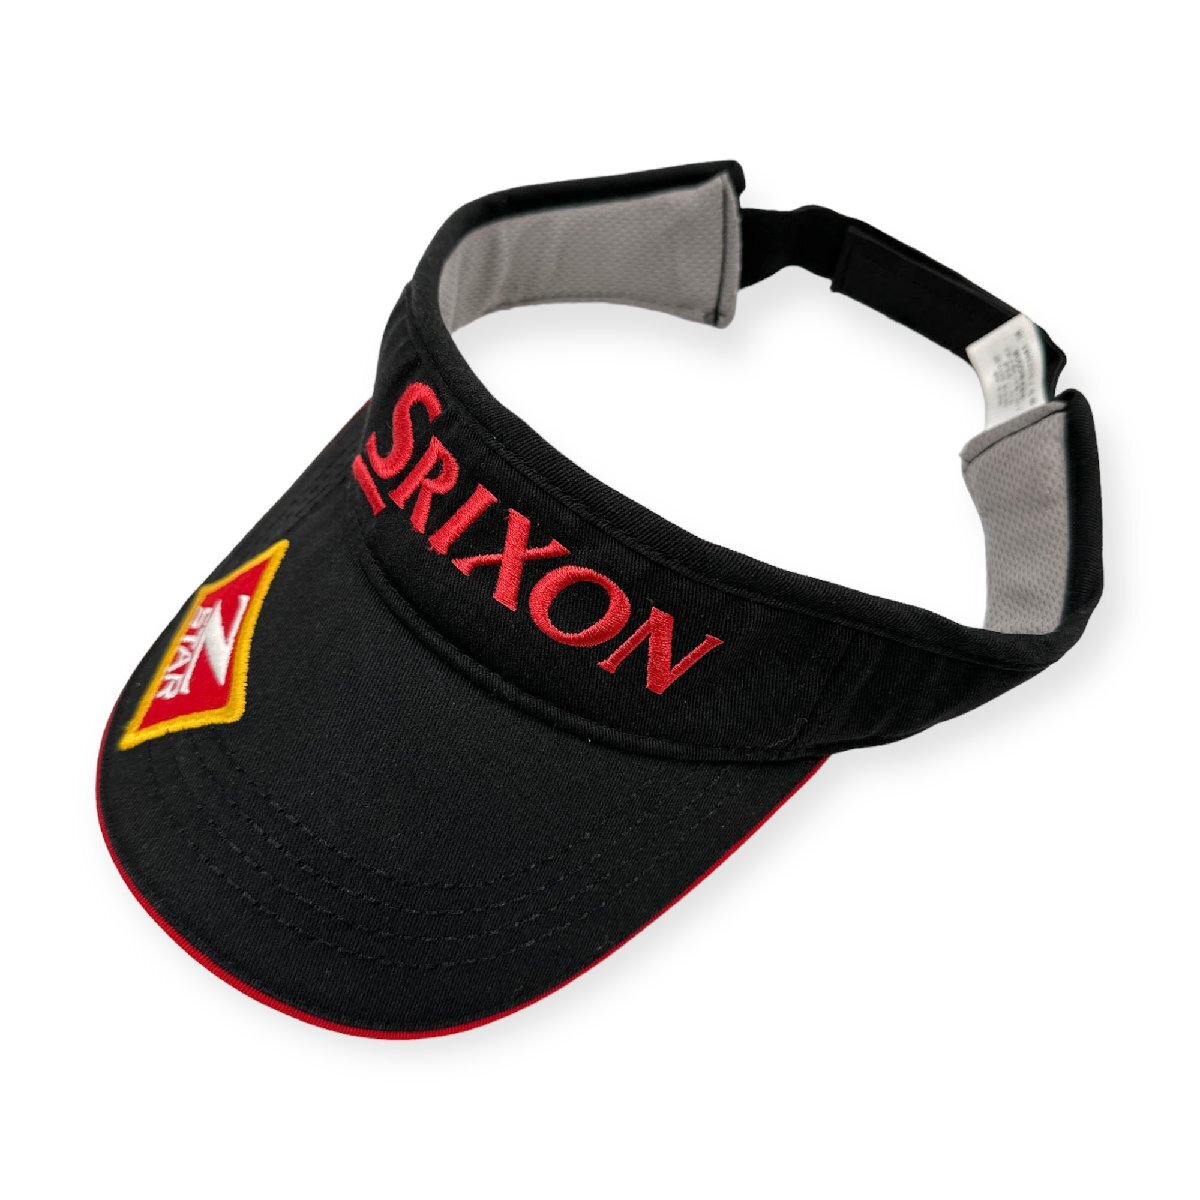  Golf *SRIXON Srixon sun visor hat free size 54~58cm / black black 